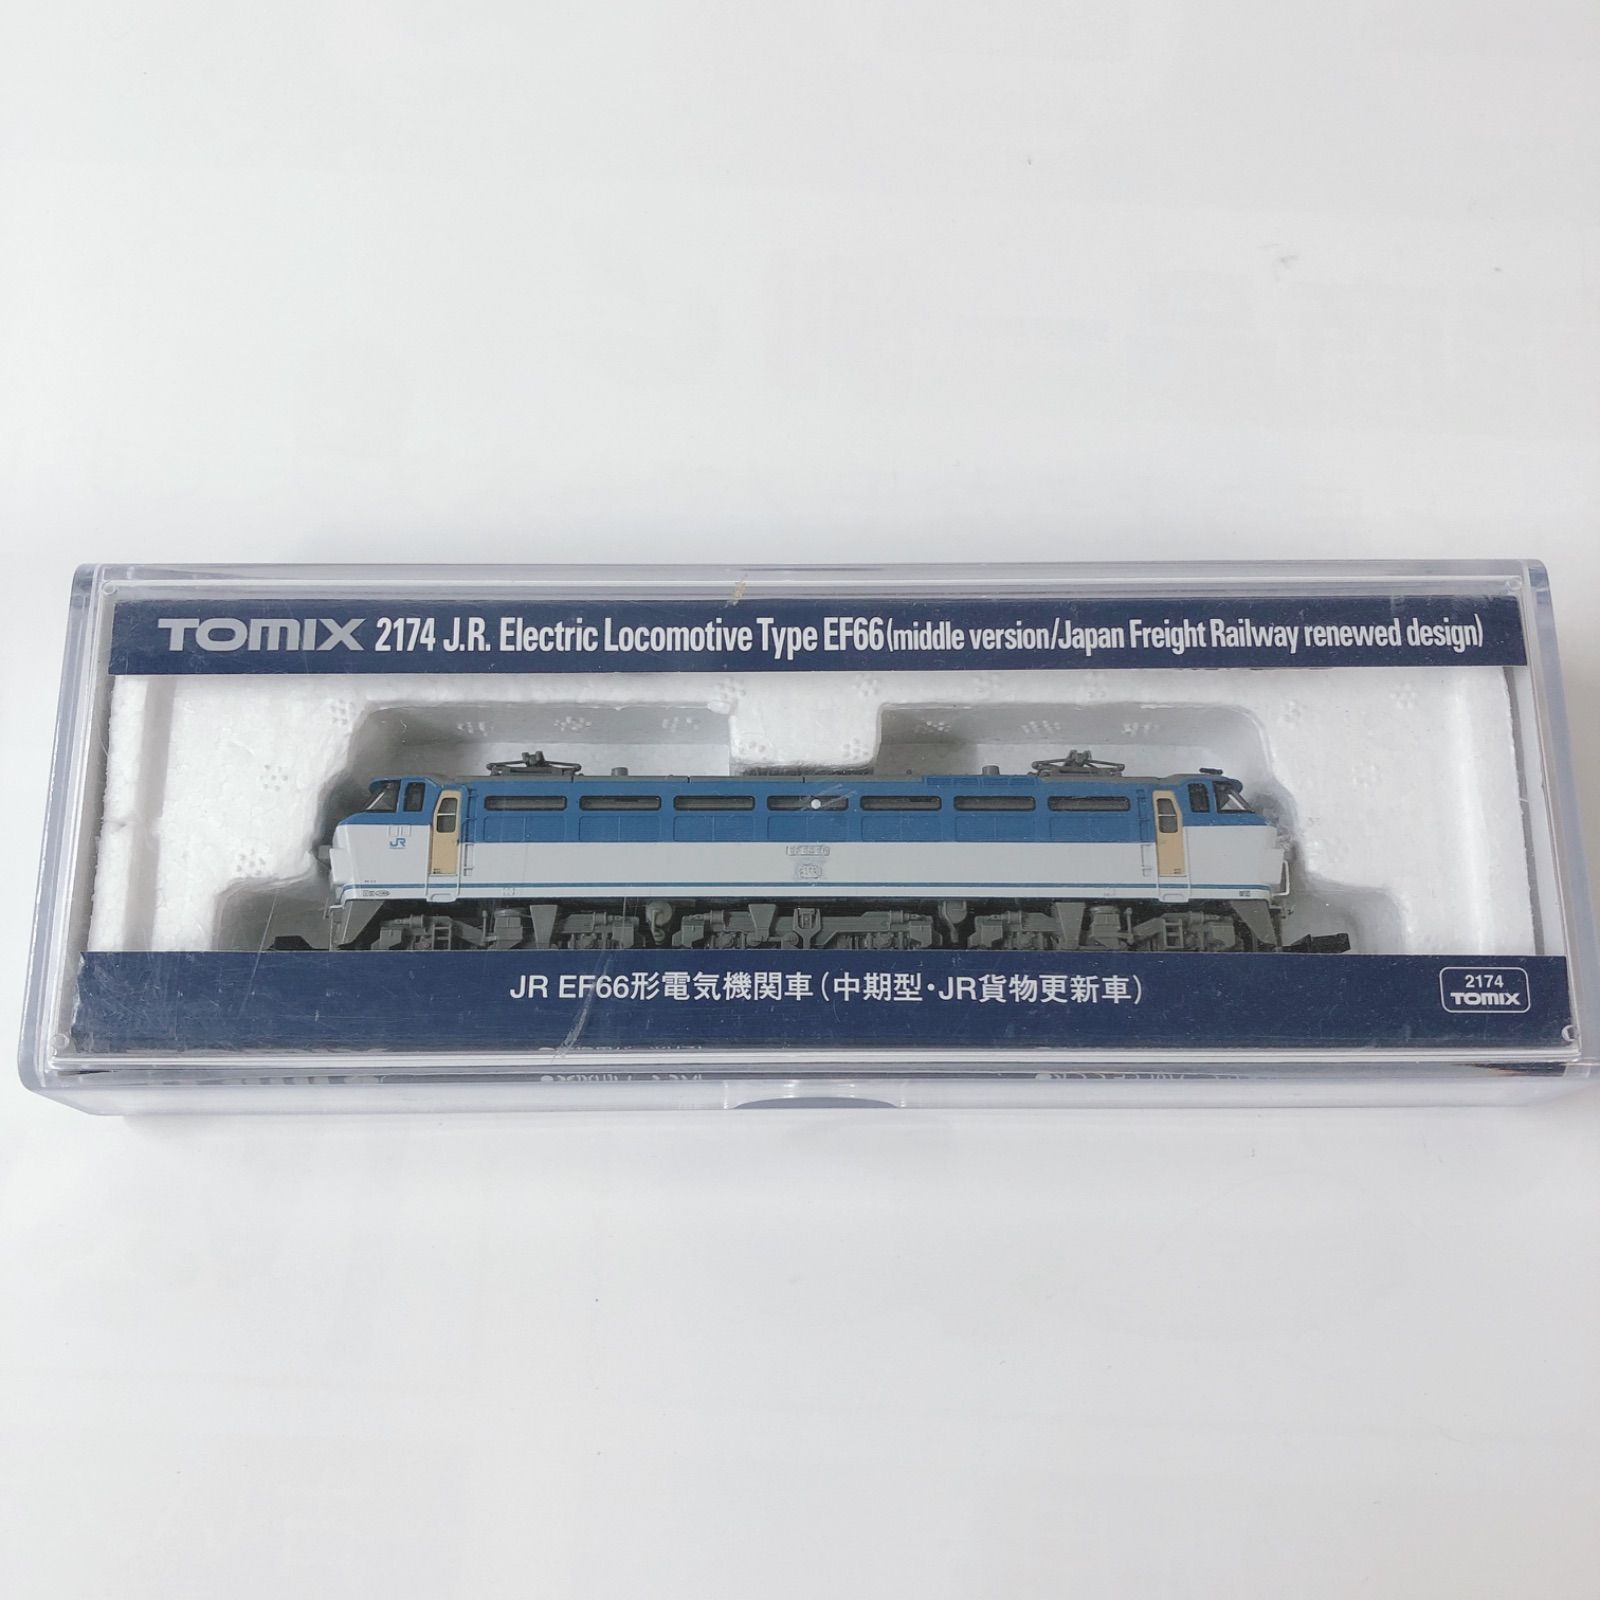 TOMIX JR EF66形電気機関車 中期型JR貨物更新車 2174 - メルカリ